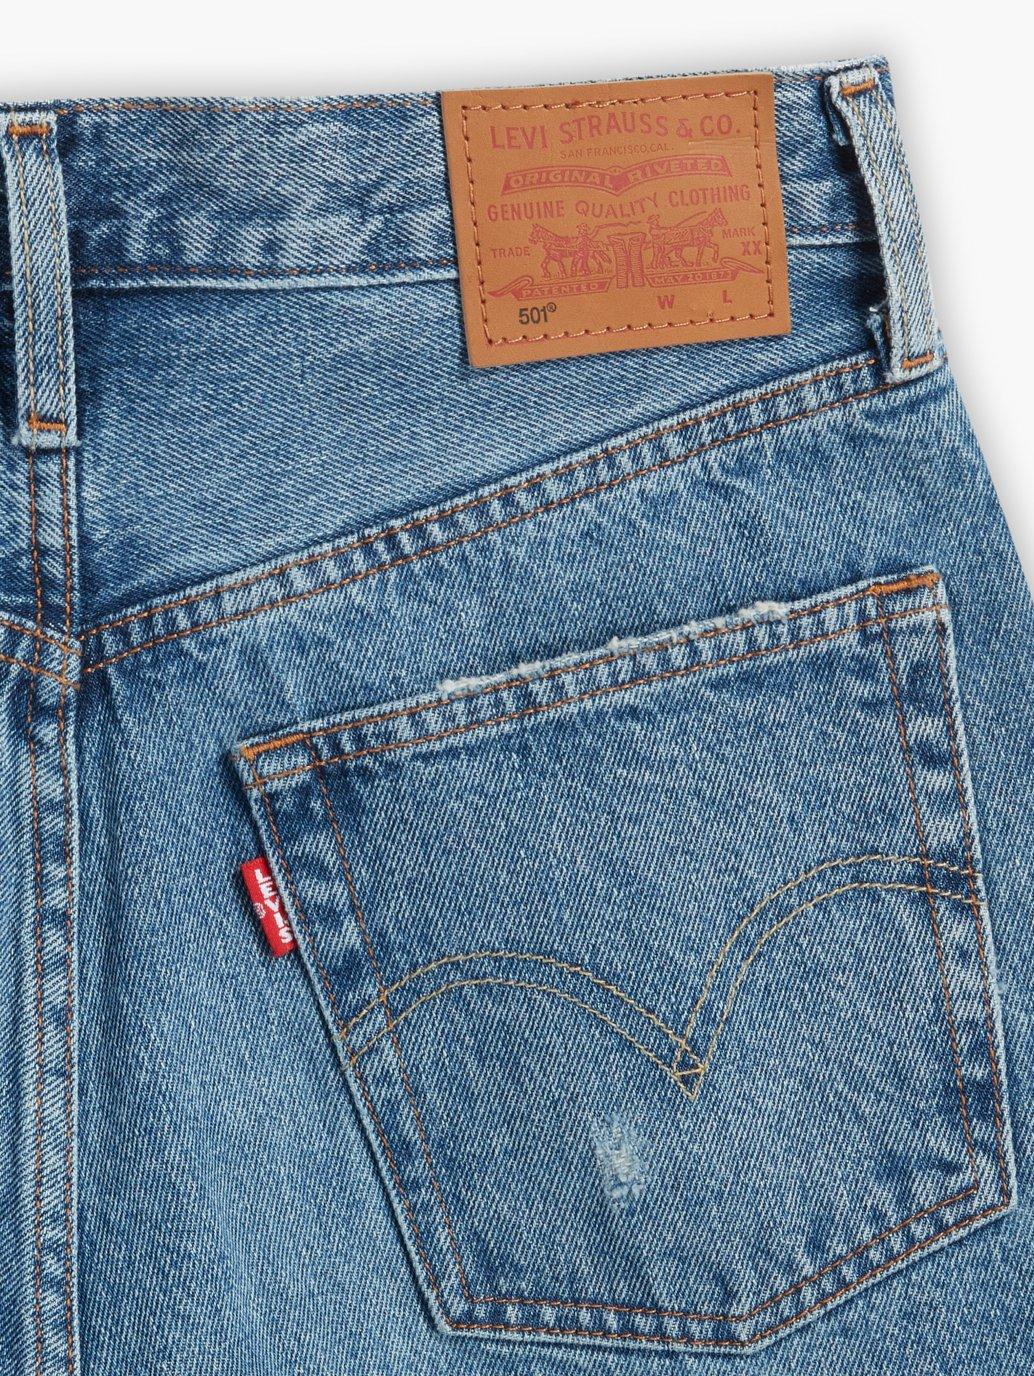 Buy Levi's® Women's 501® Original Jeans | Levi’s® Official Online Store PH